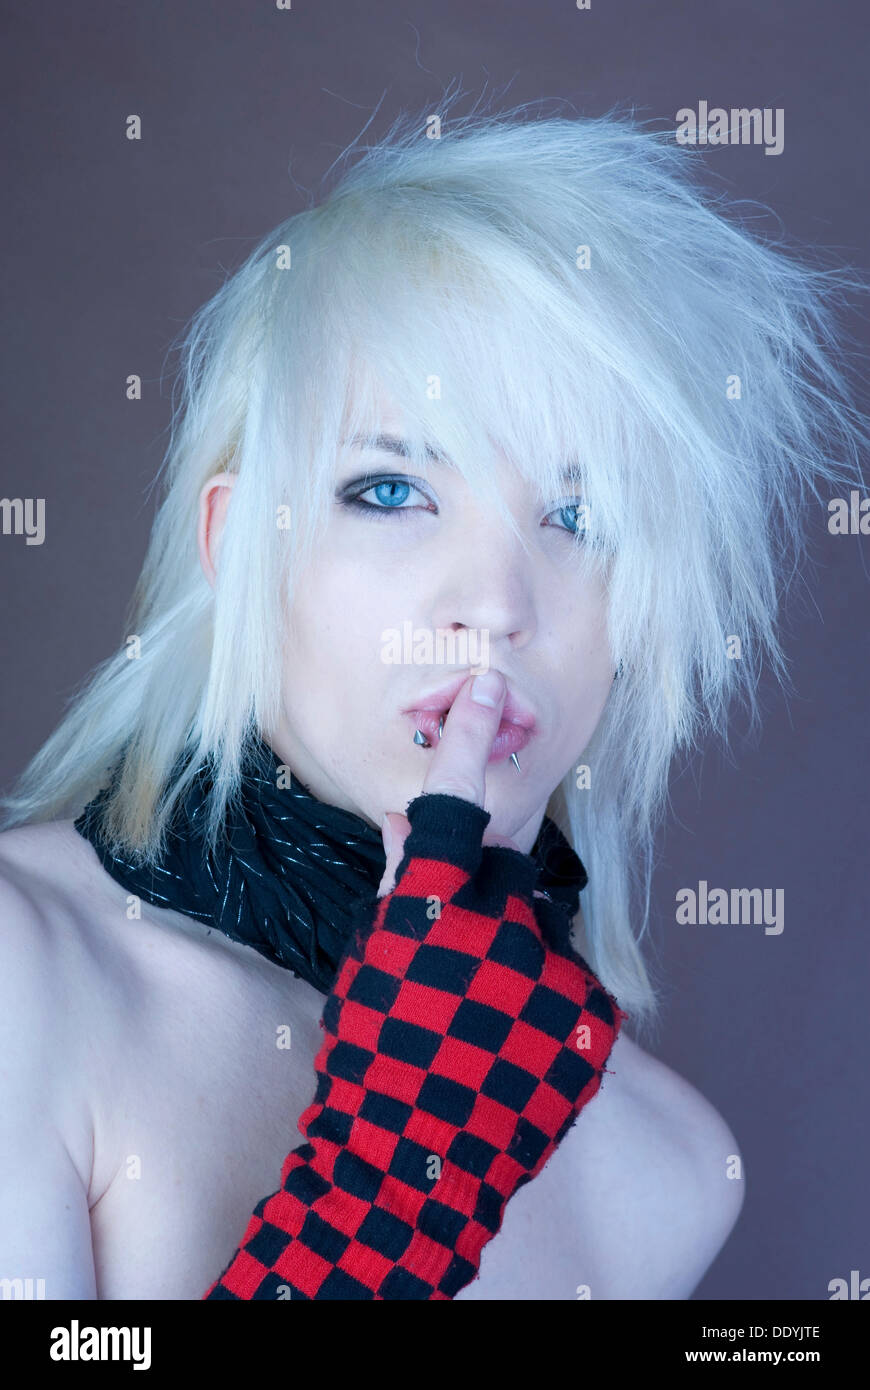 Blond man, Manga style, Punk style, fingers, lips Stock Photo